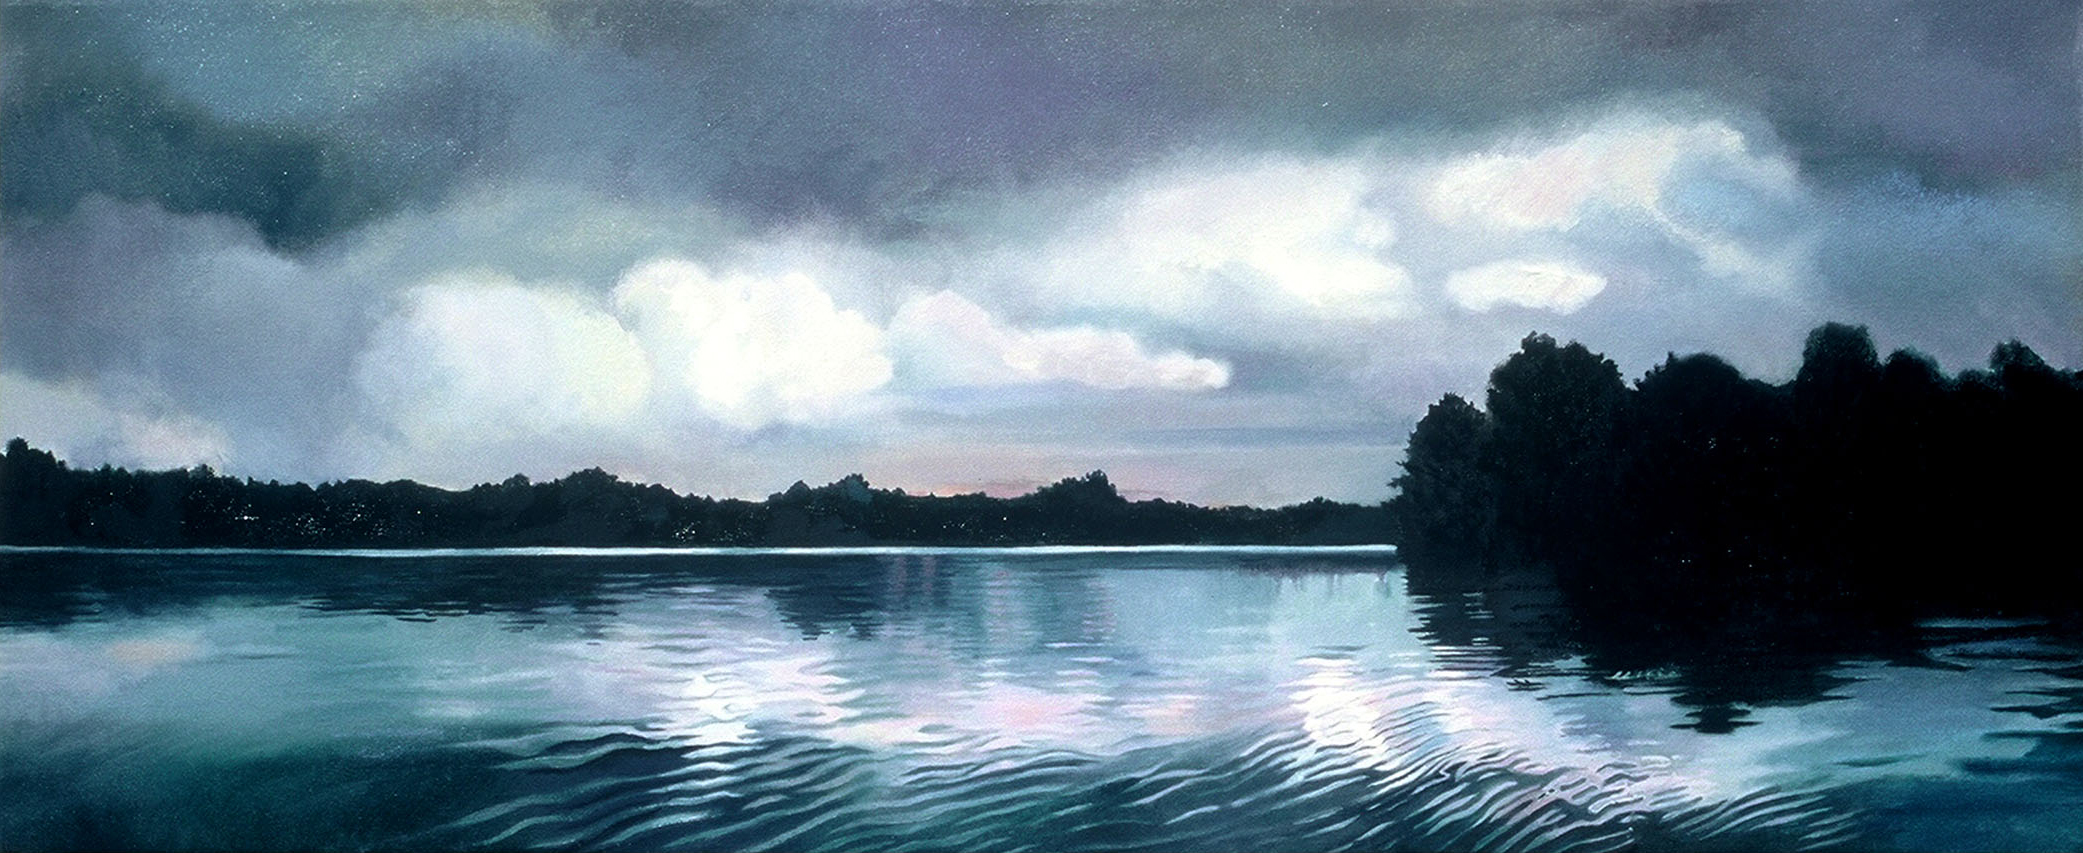 Reidsville Lake, Morning, 23.5 x 54.5 inches (framed), oil, 2005-2006